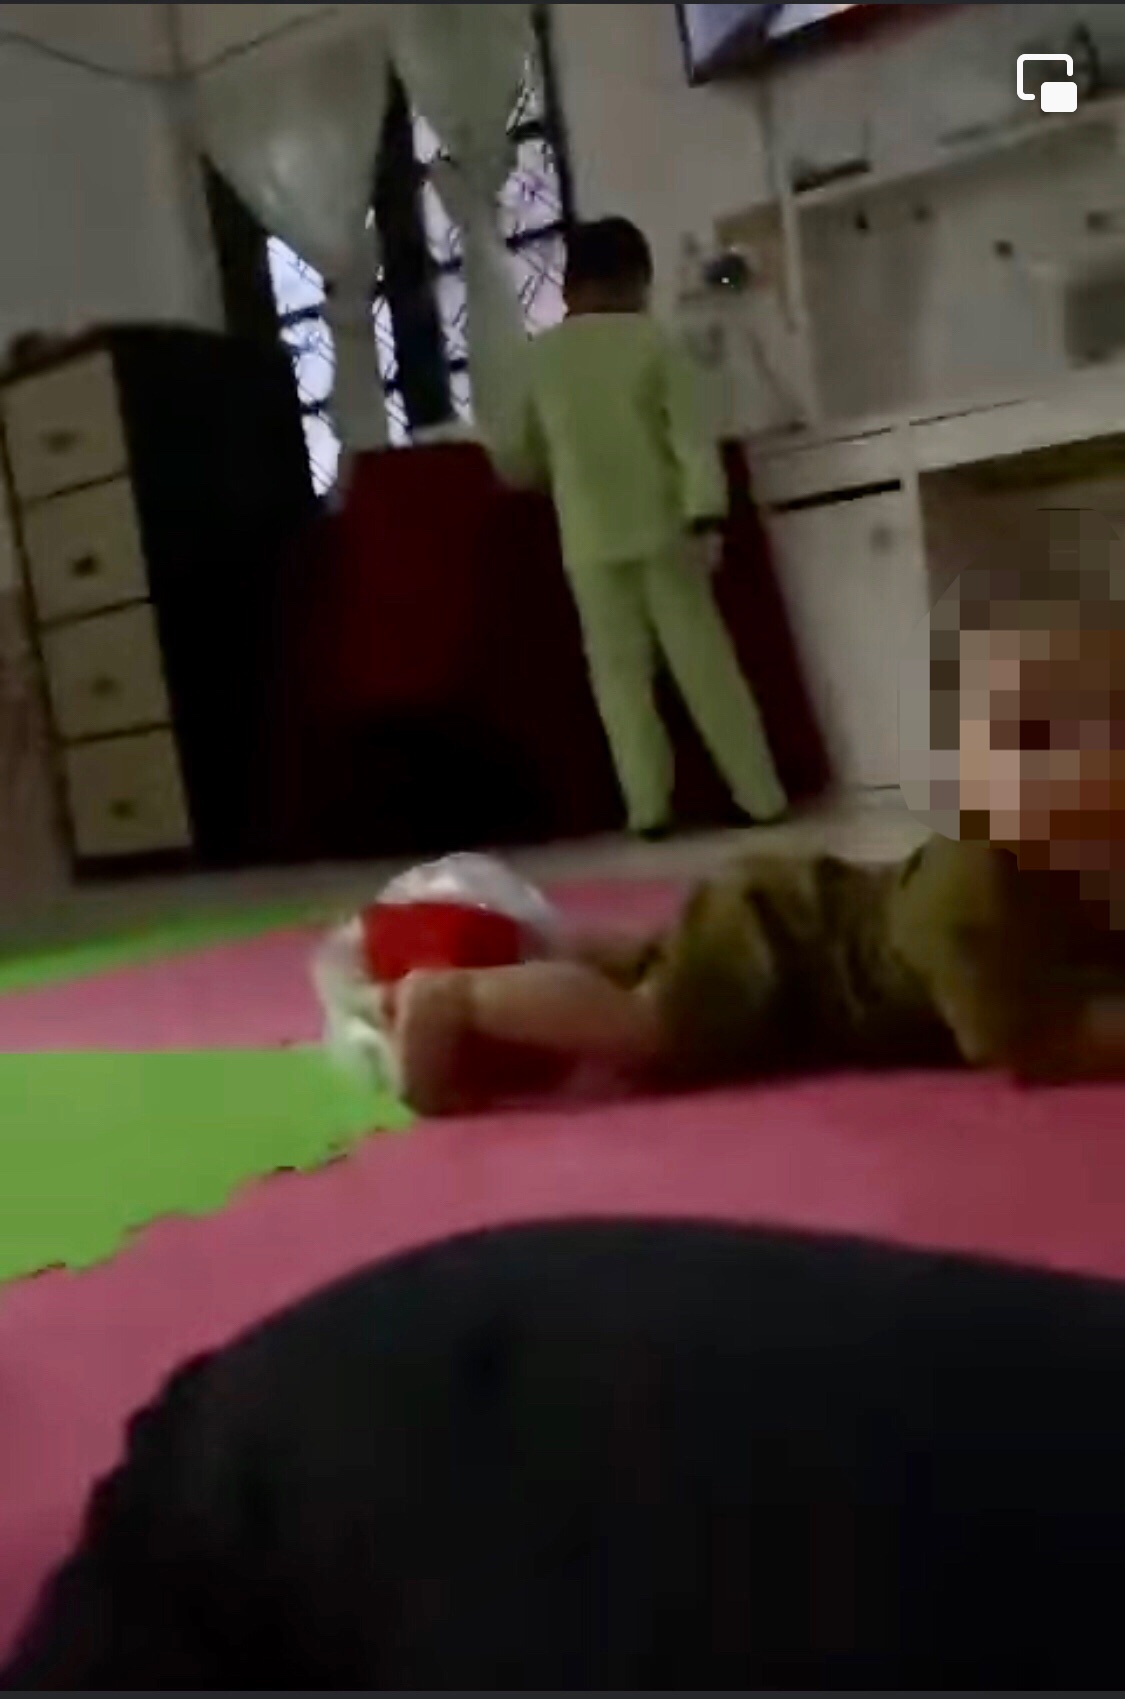 Nanny under police investigation for dunking parcel on infant | weirdkaya